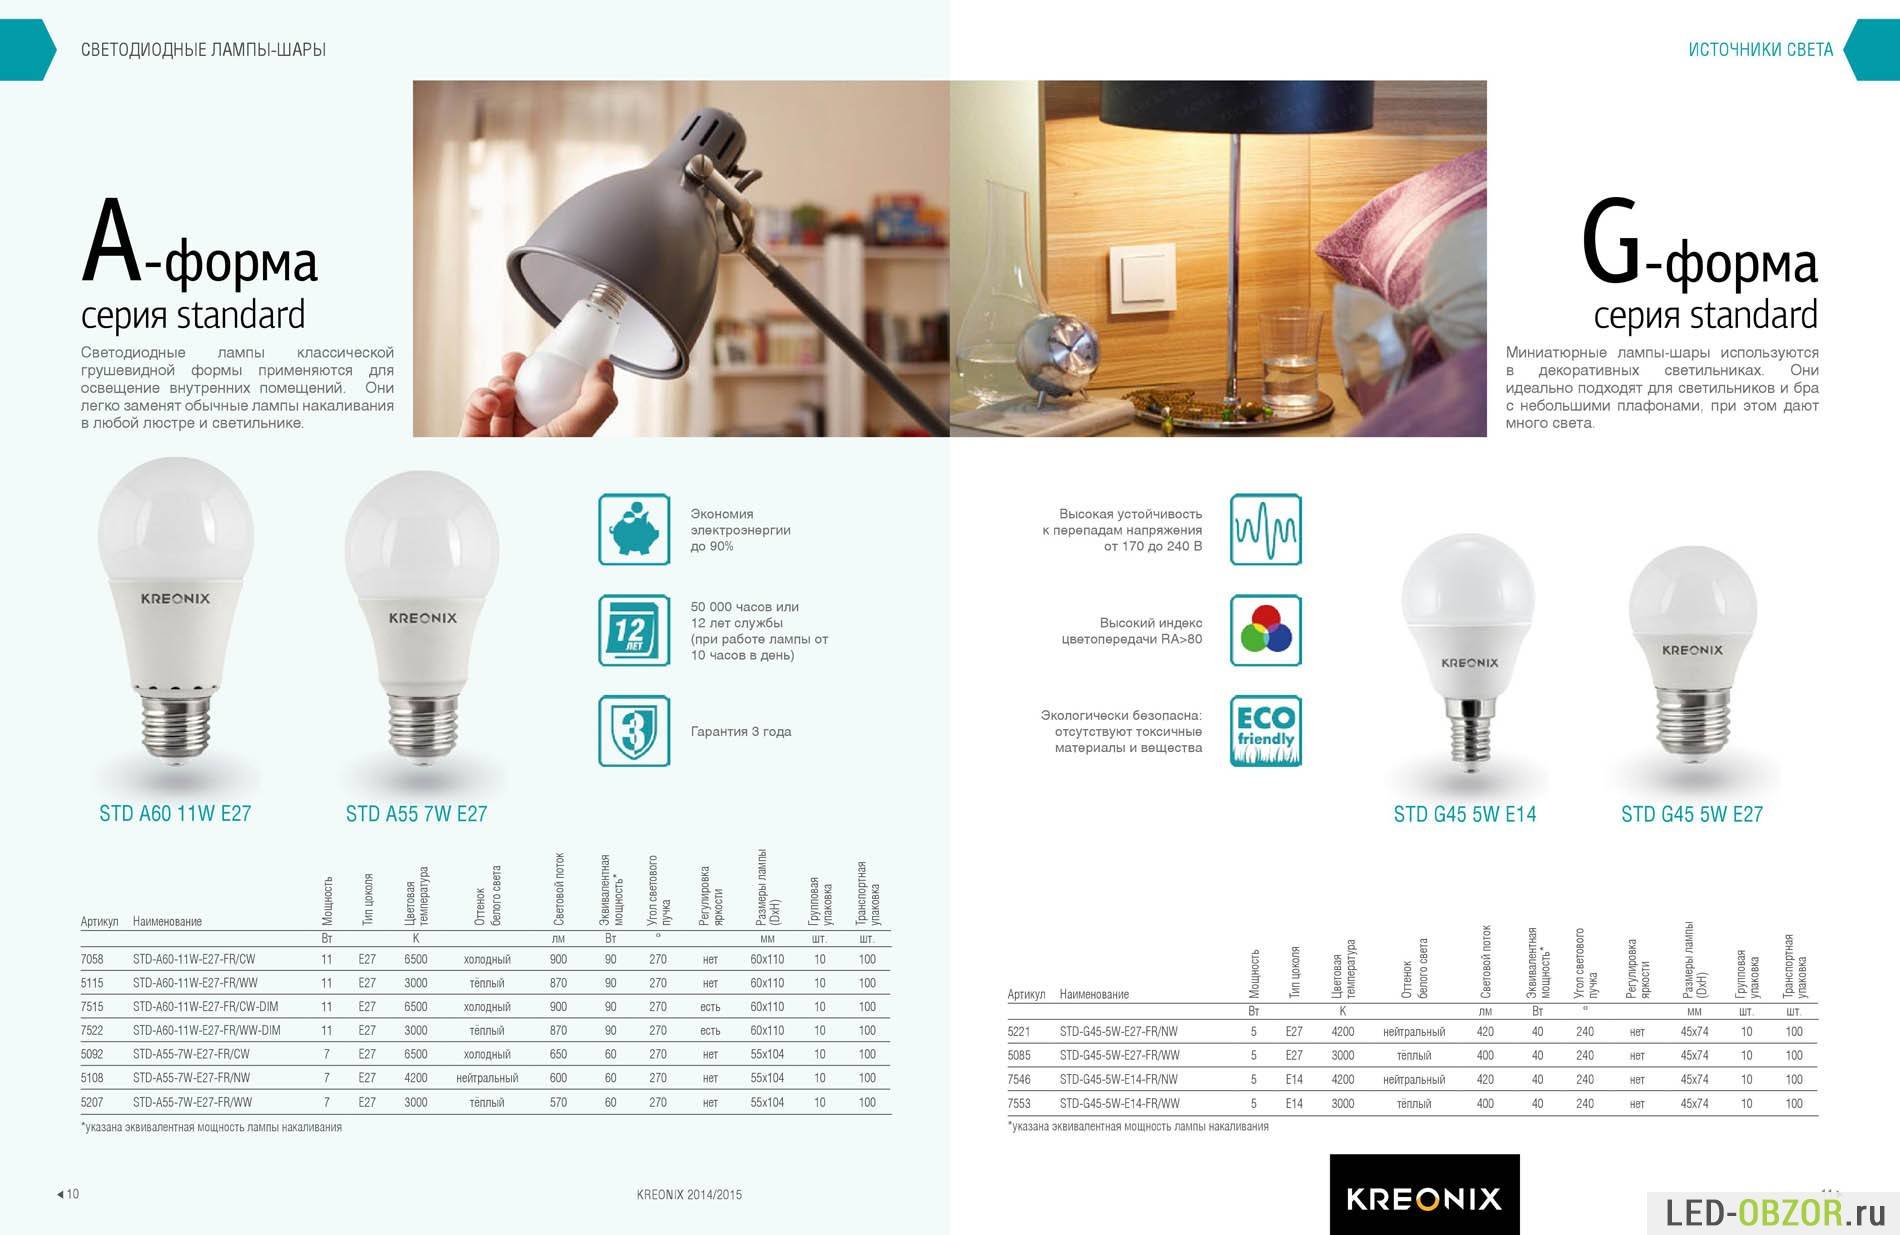 Лампы светодиодные с цоколем e14: сравнительный обзор лучших моделей на рынке